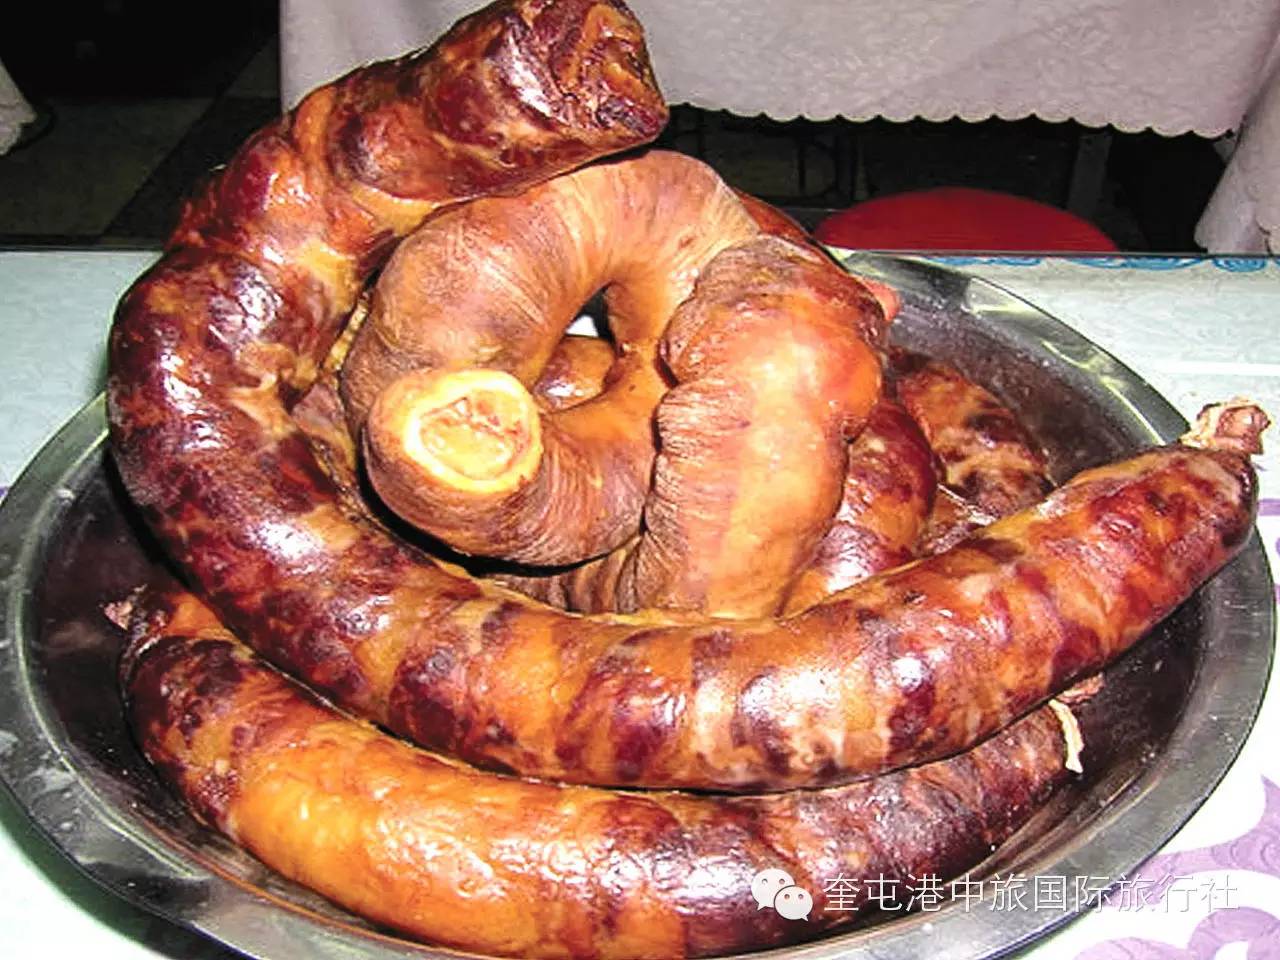 阿凡提巴扎新疆伊犁哈萨克手工散装熏马肠熏马肉500g两斤包邮